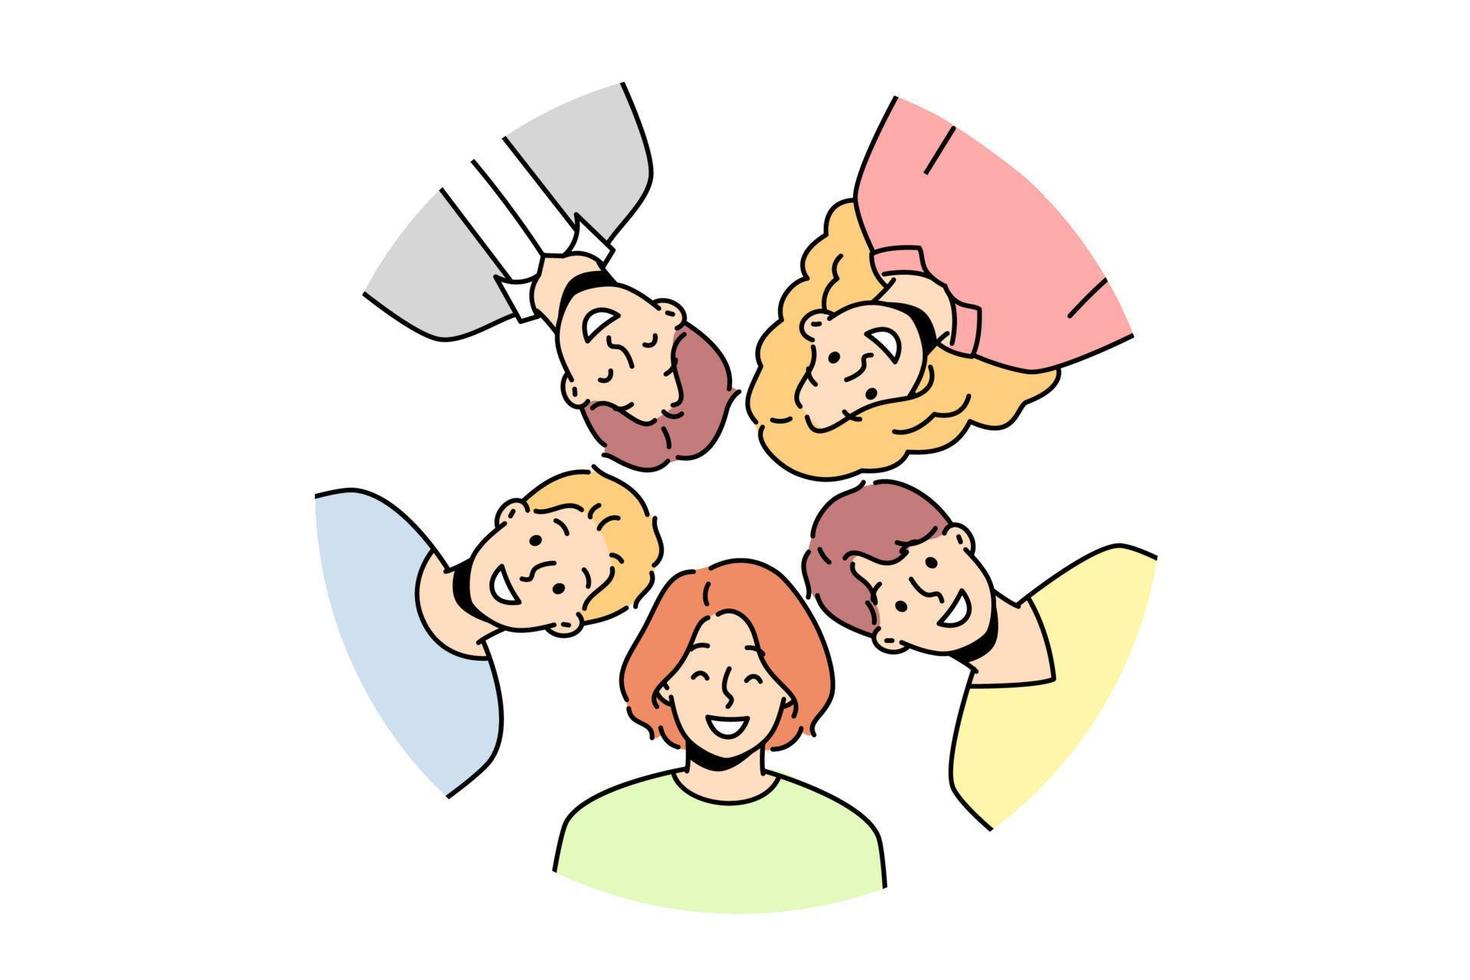 retrato de sonrientes amigos diversos posando juntos en círculo. foto grupal de personas multirraciales felices que muestran unidad y amistad. ilustración vectorial vector